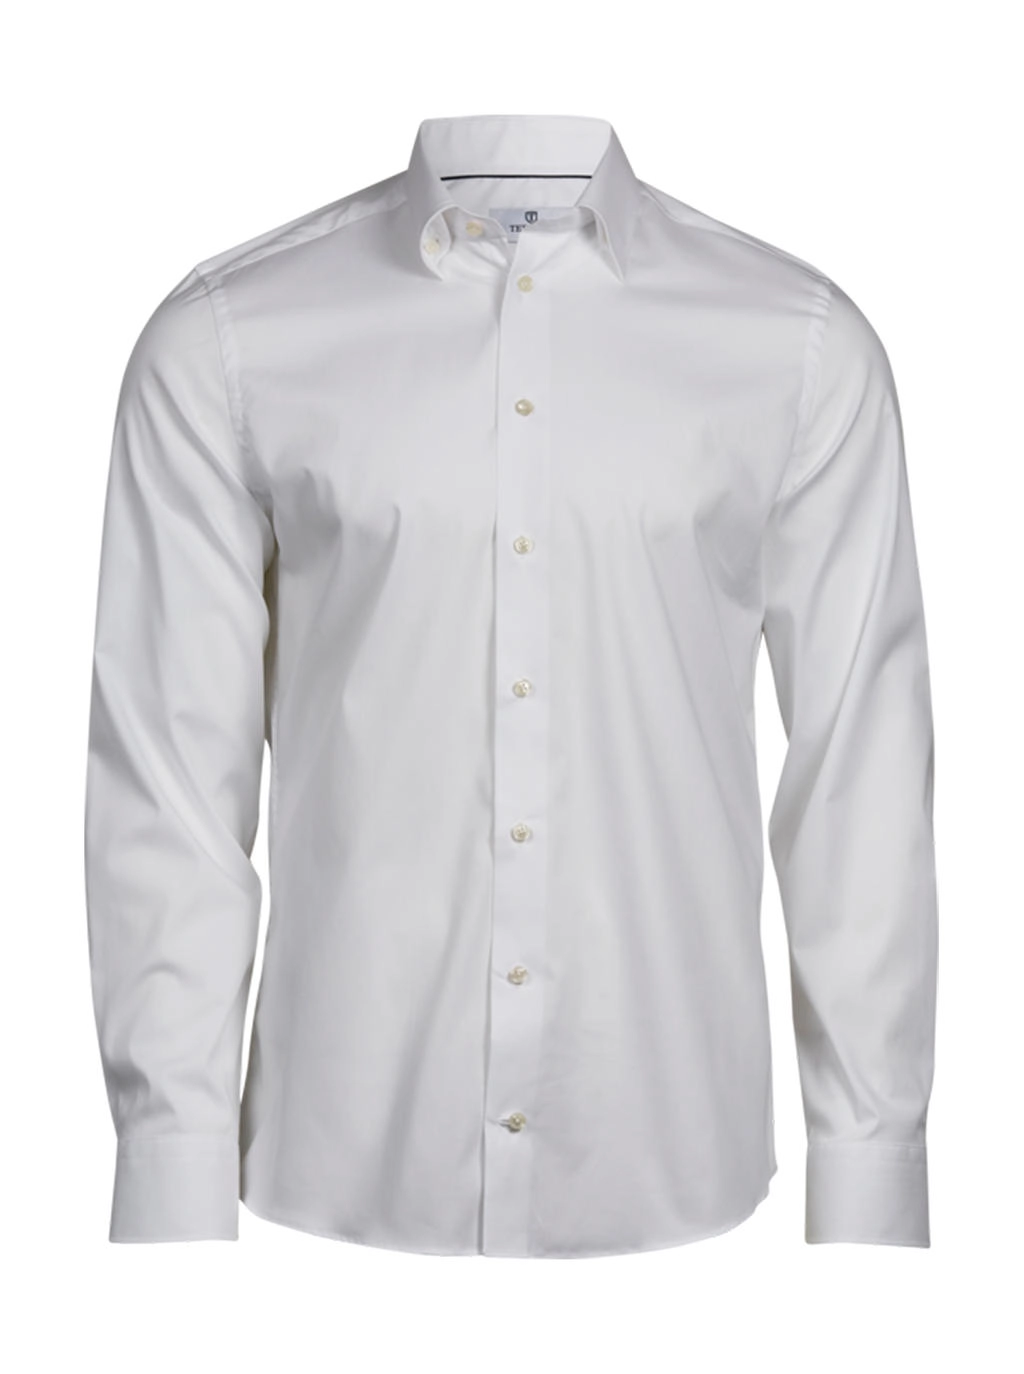 Stretch Luxury Shirt zum Besticken und Bedrucken in der Farbe White mit Ihren Logo, Schriftzug oder Motiv.